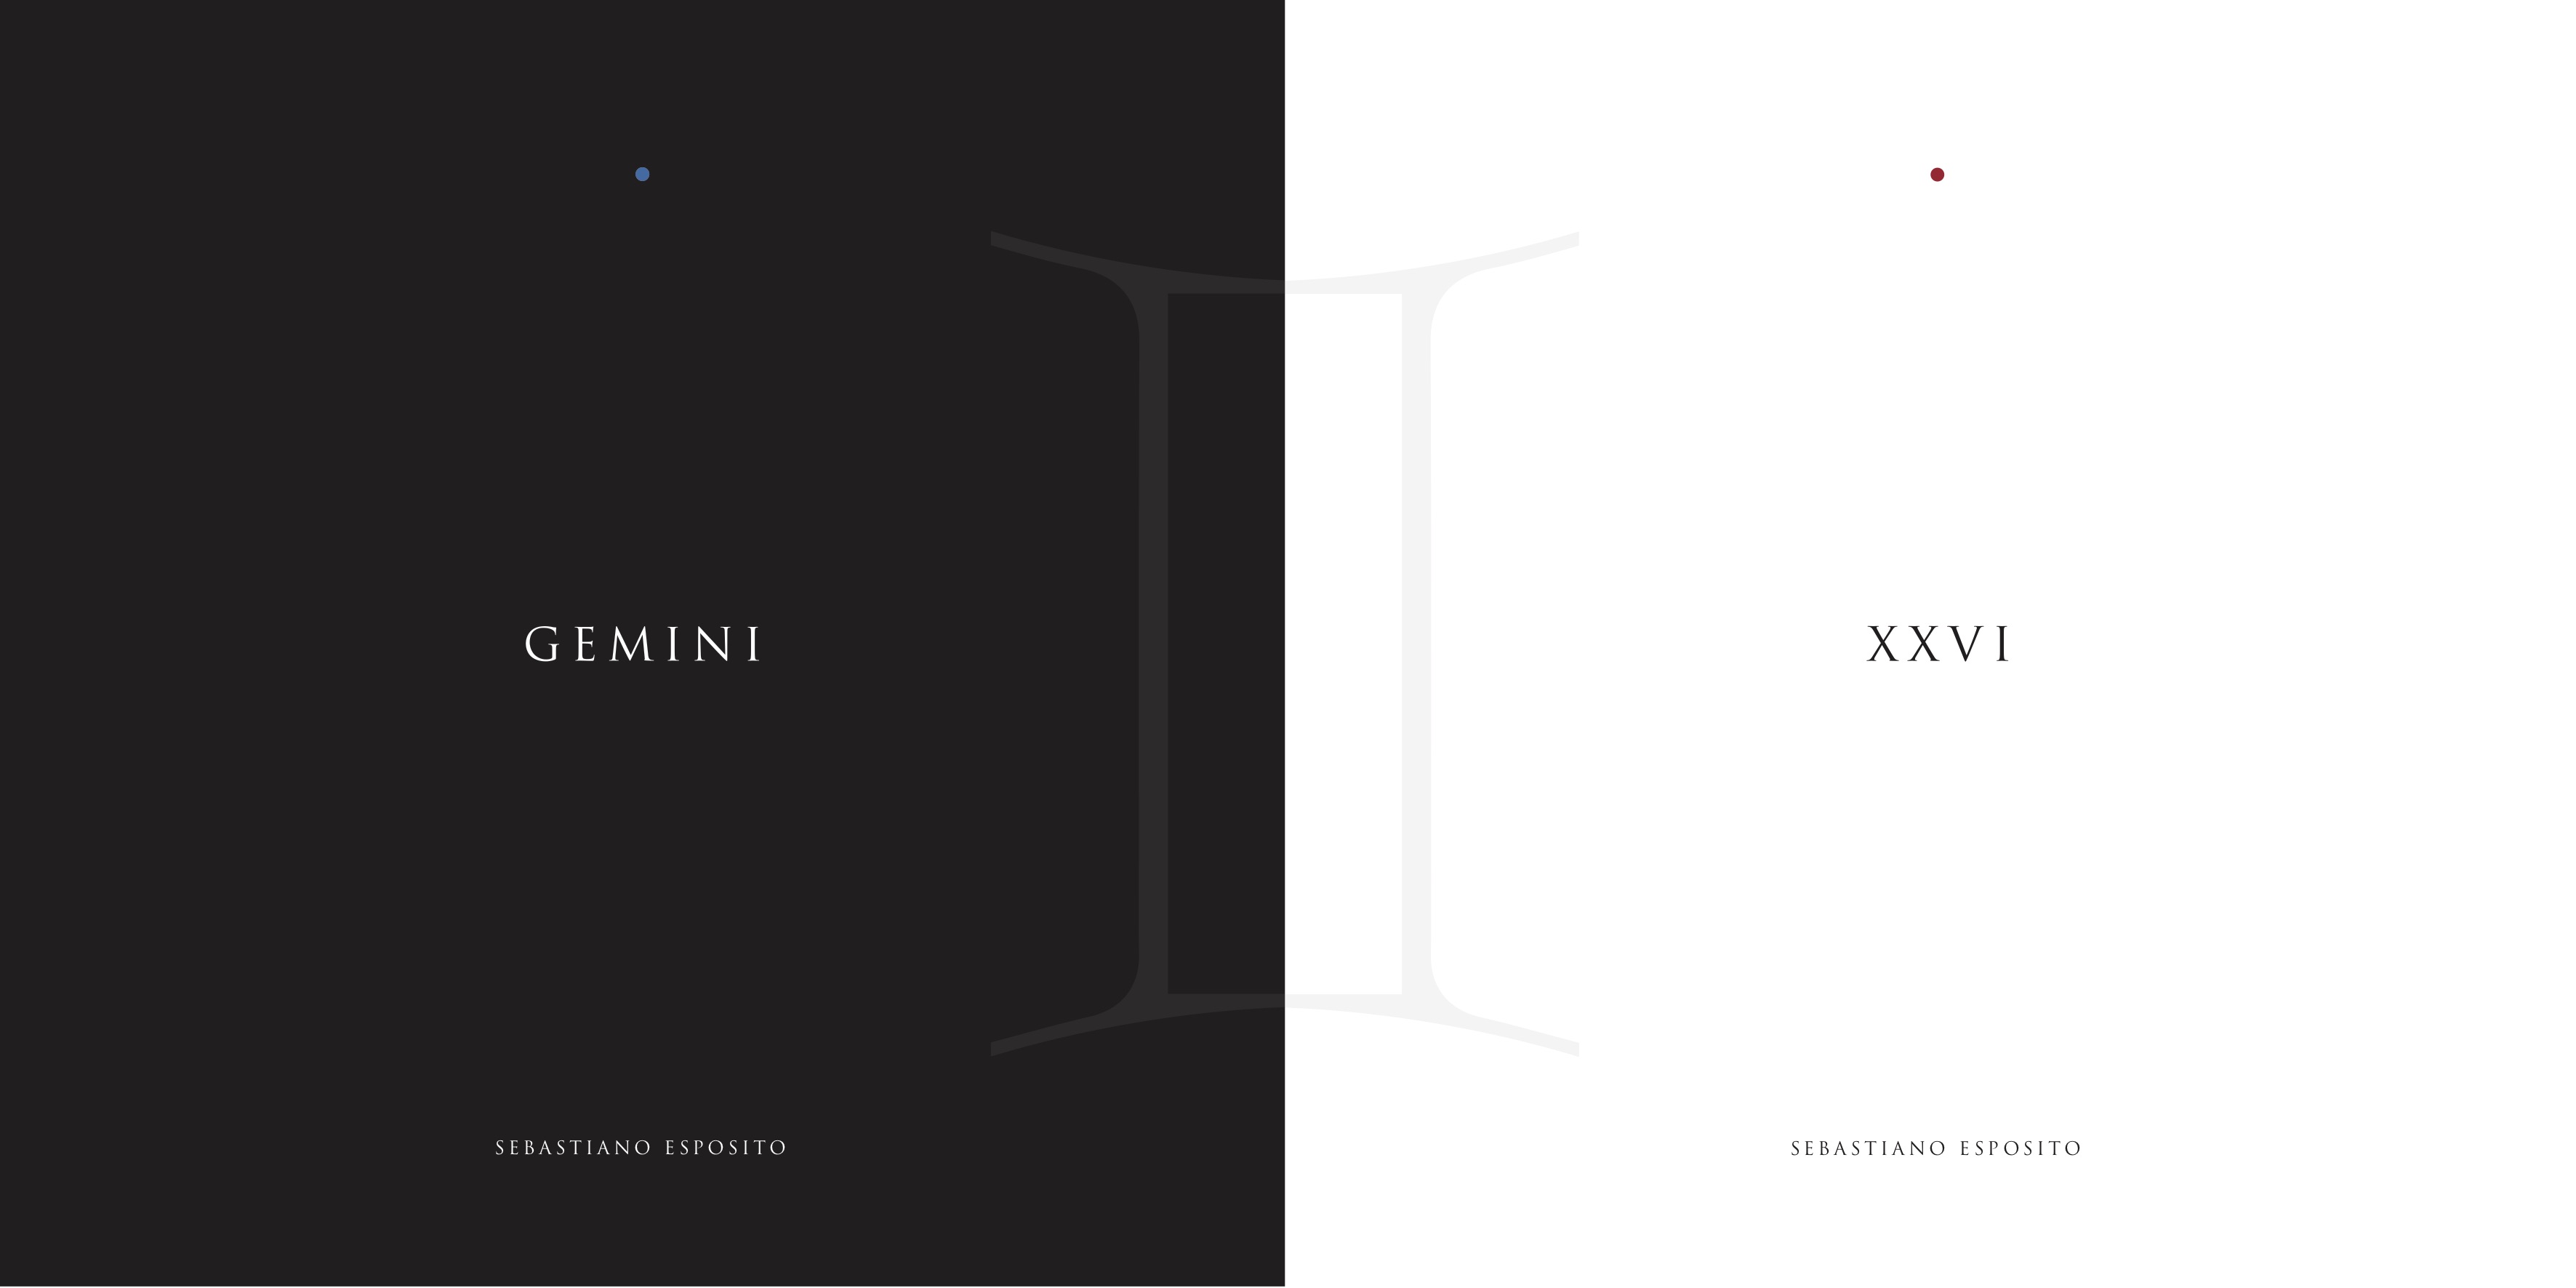 XXVI – GEMINI: Il nuovo vinile di Sebastiano Esposito feat. Fabrizio Bosso